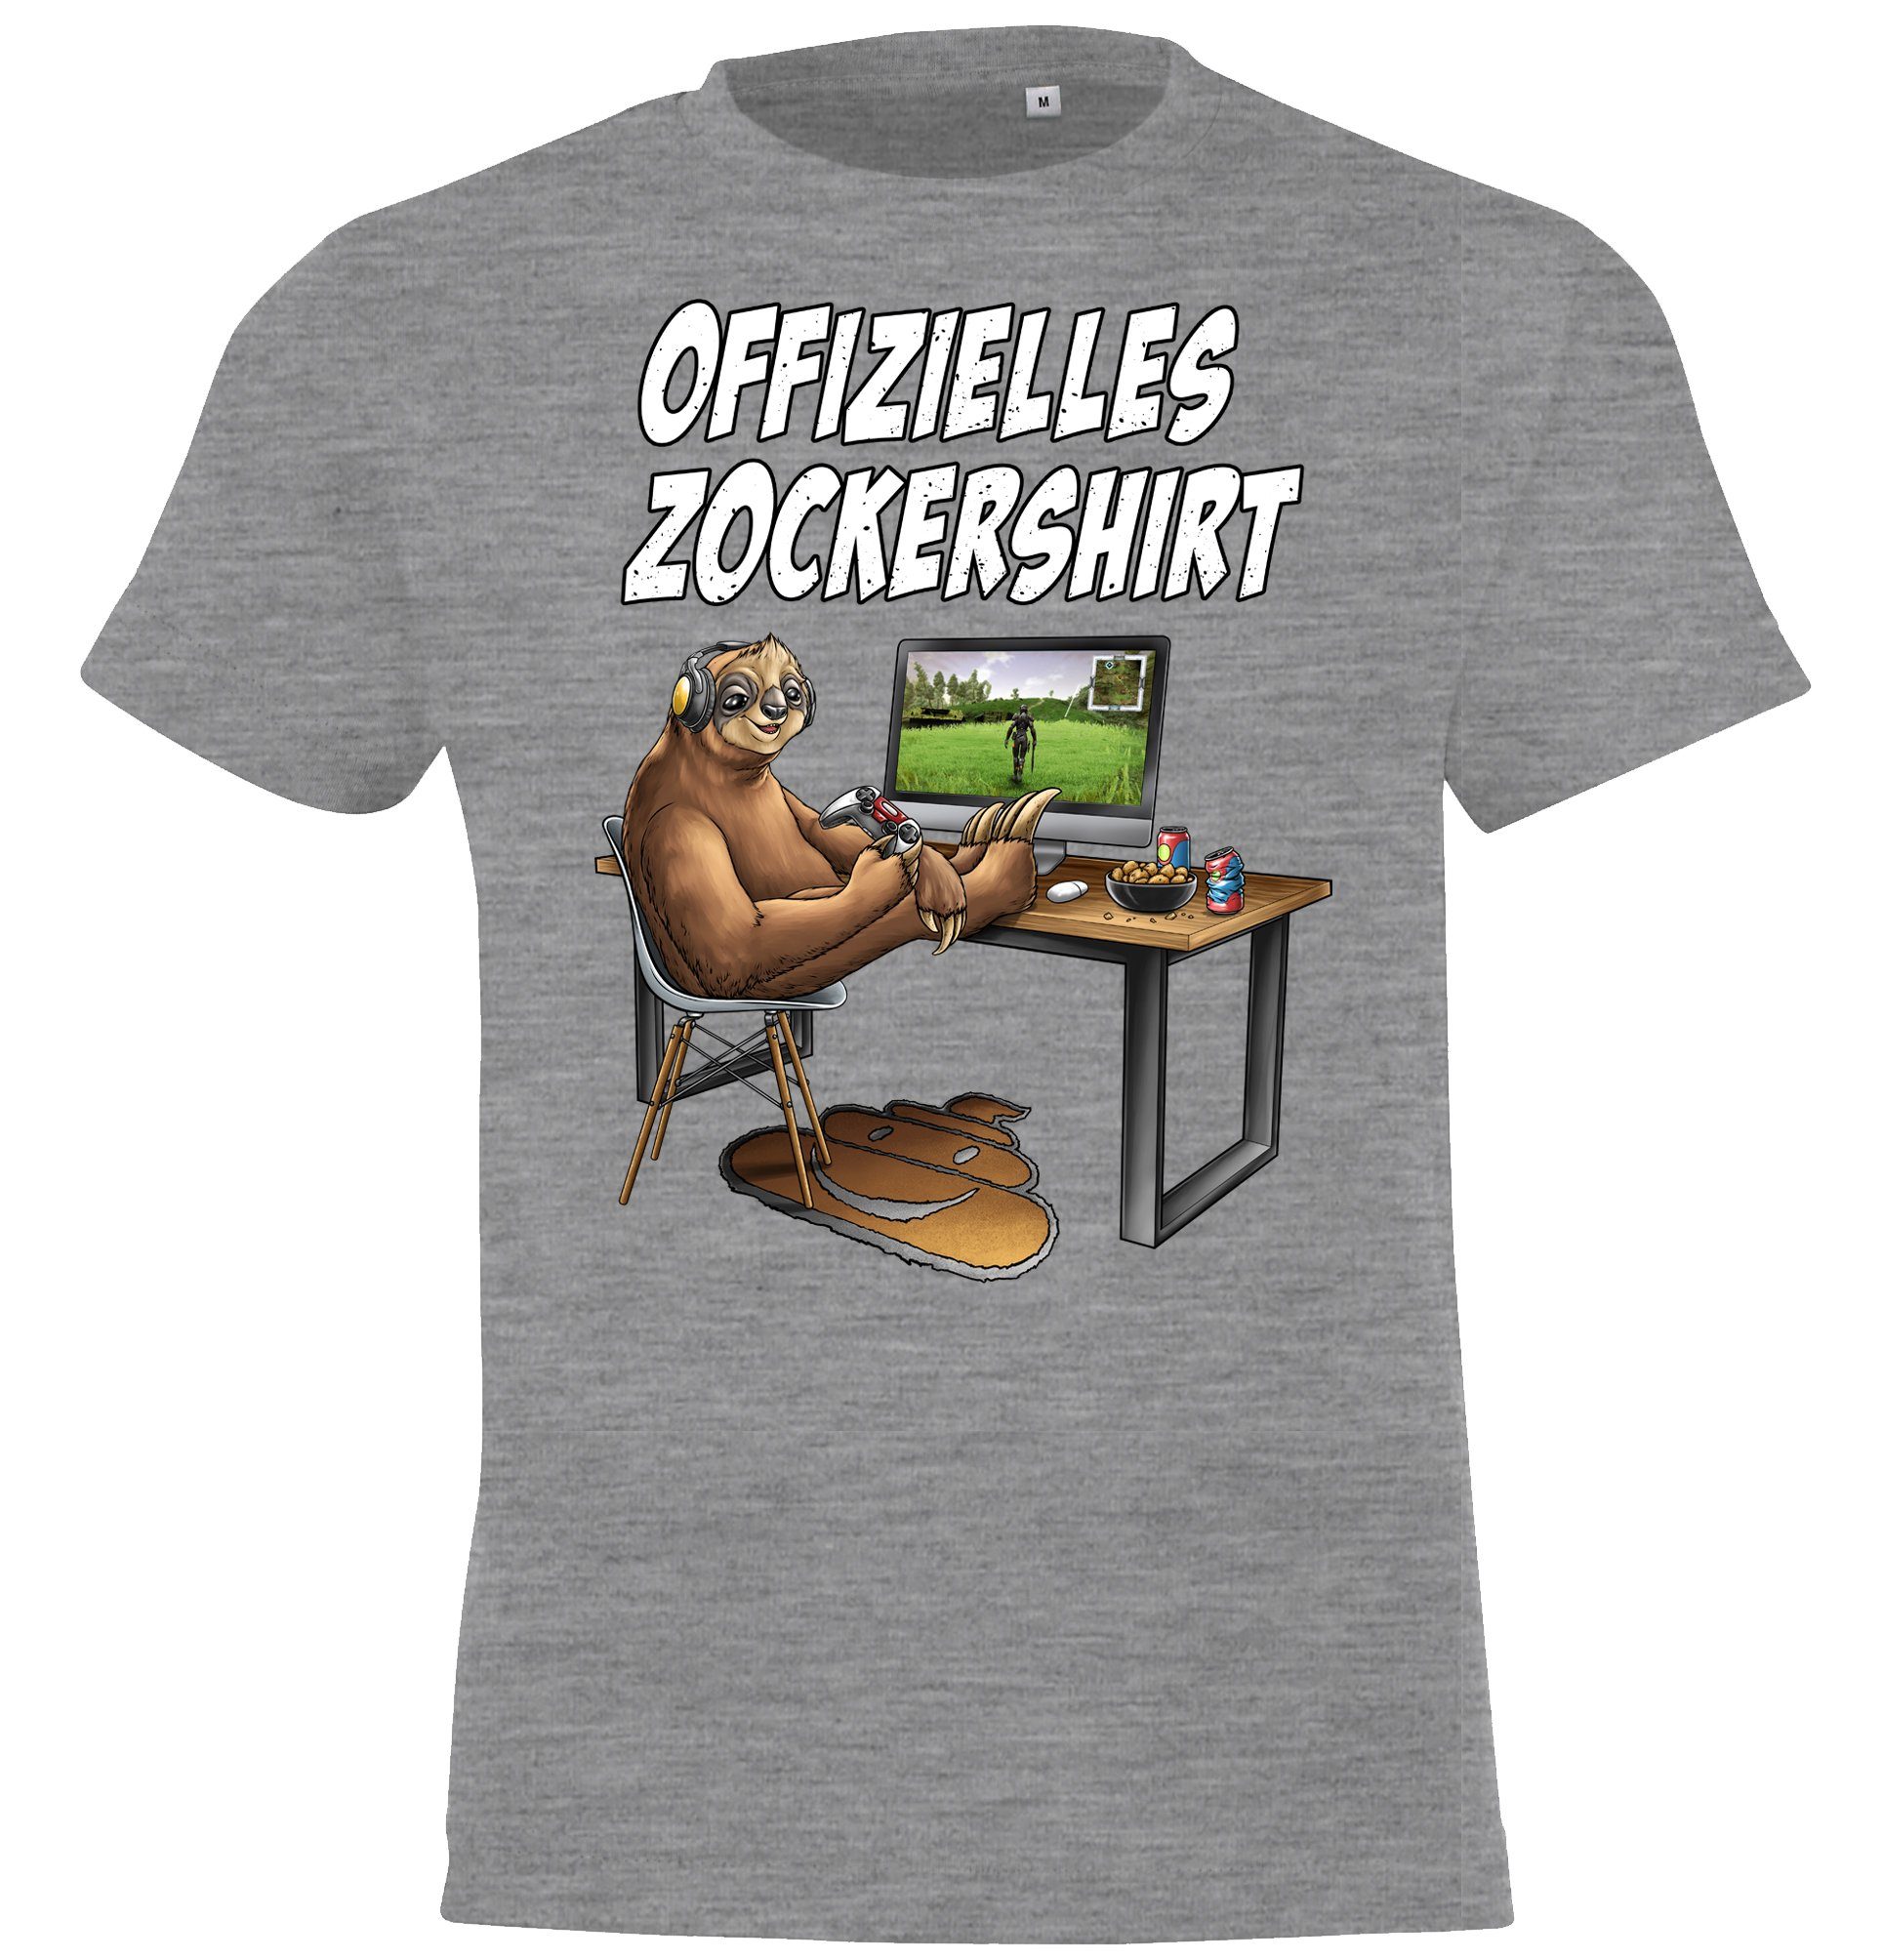 Youth Designz T-Shirt Offizielles Zockershirt für Jungen und Mädchen mit lustigem Gaming Motiv Grau